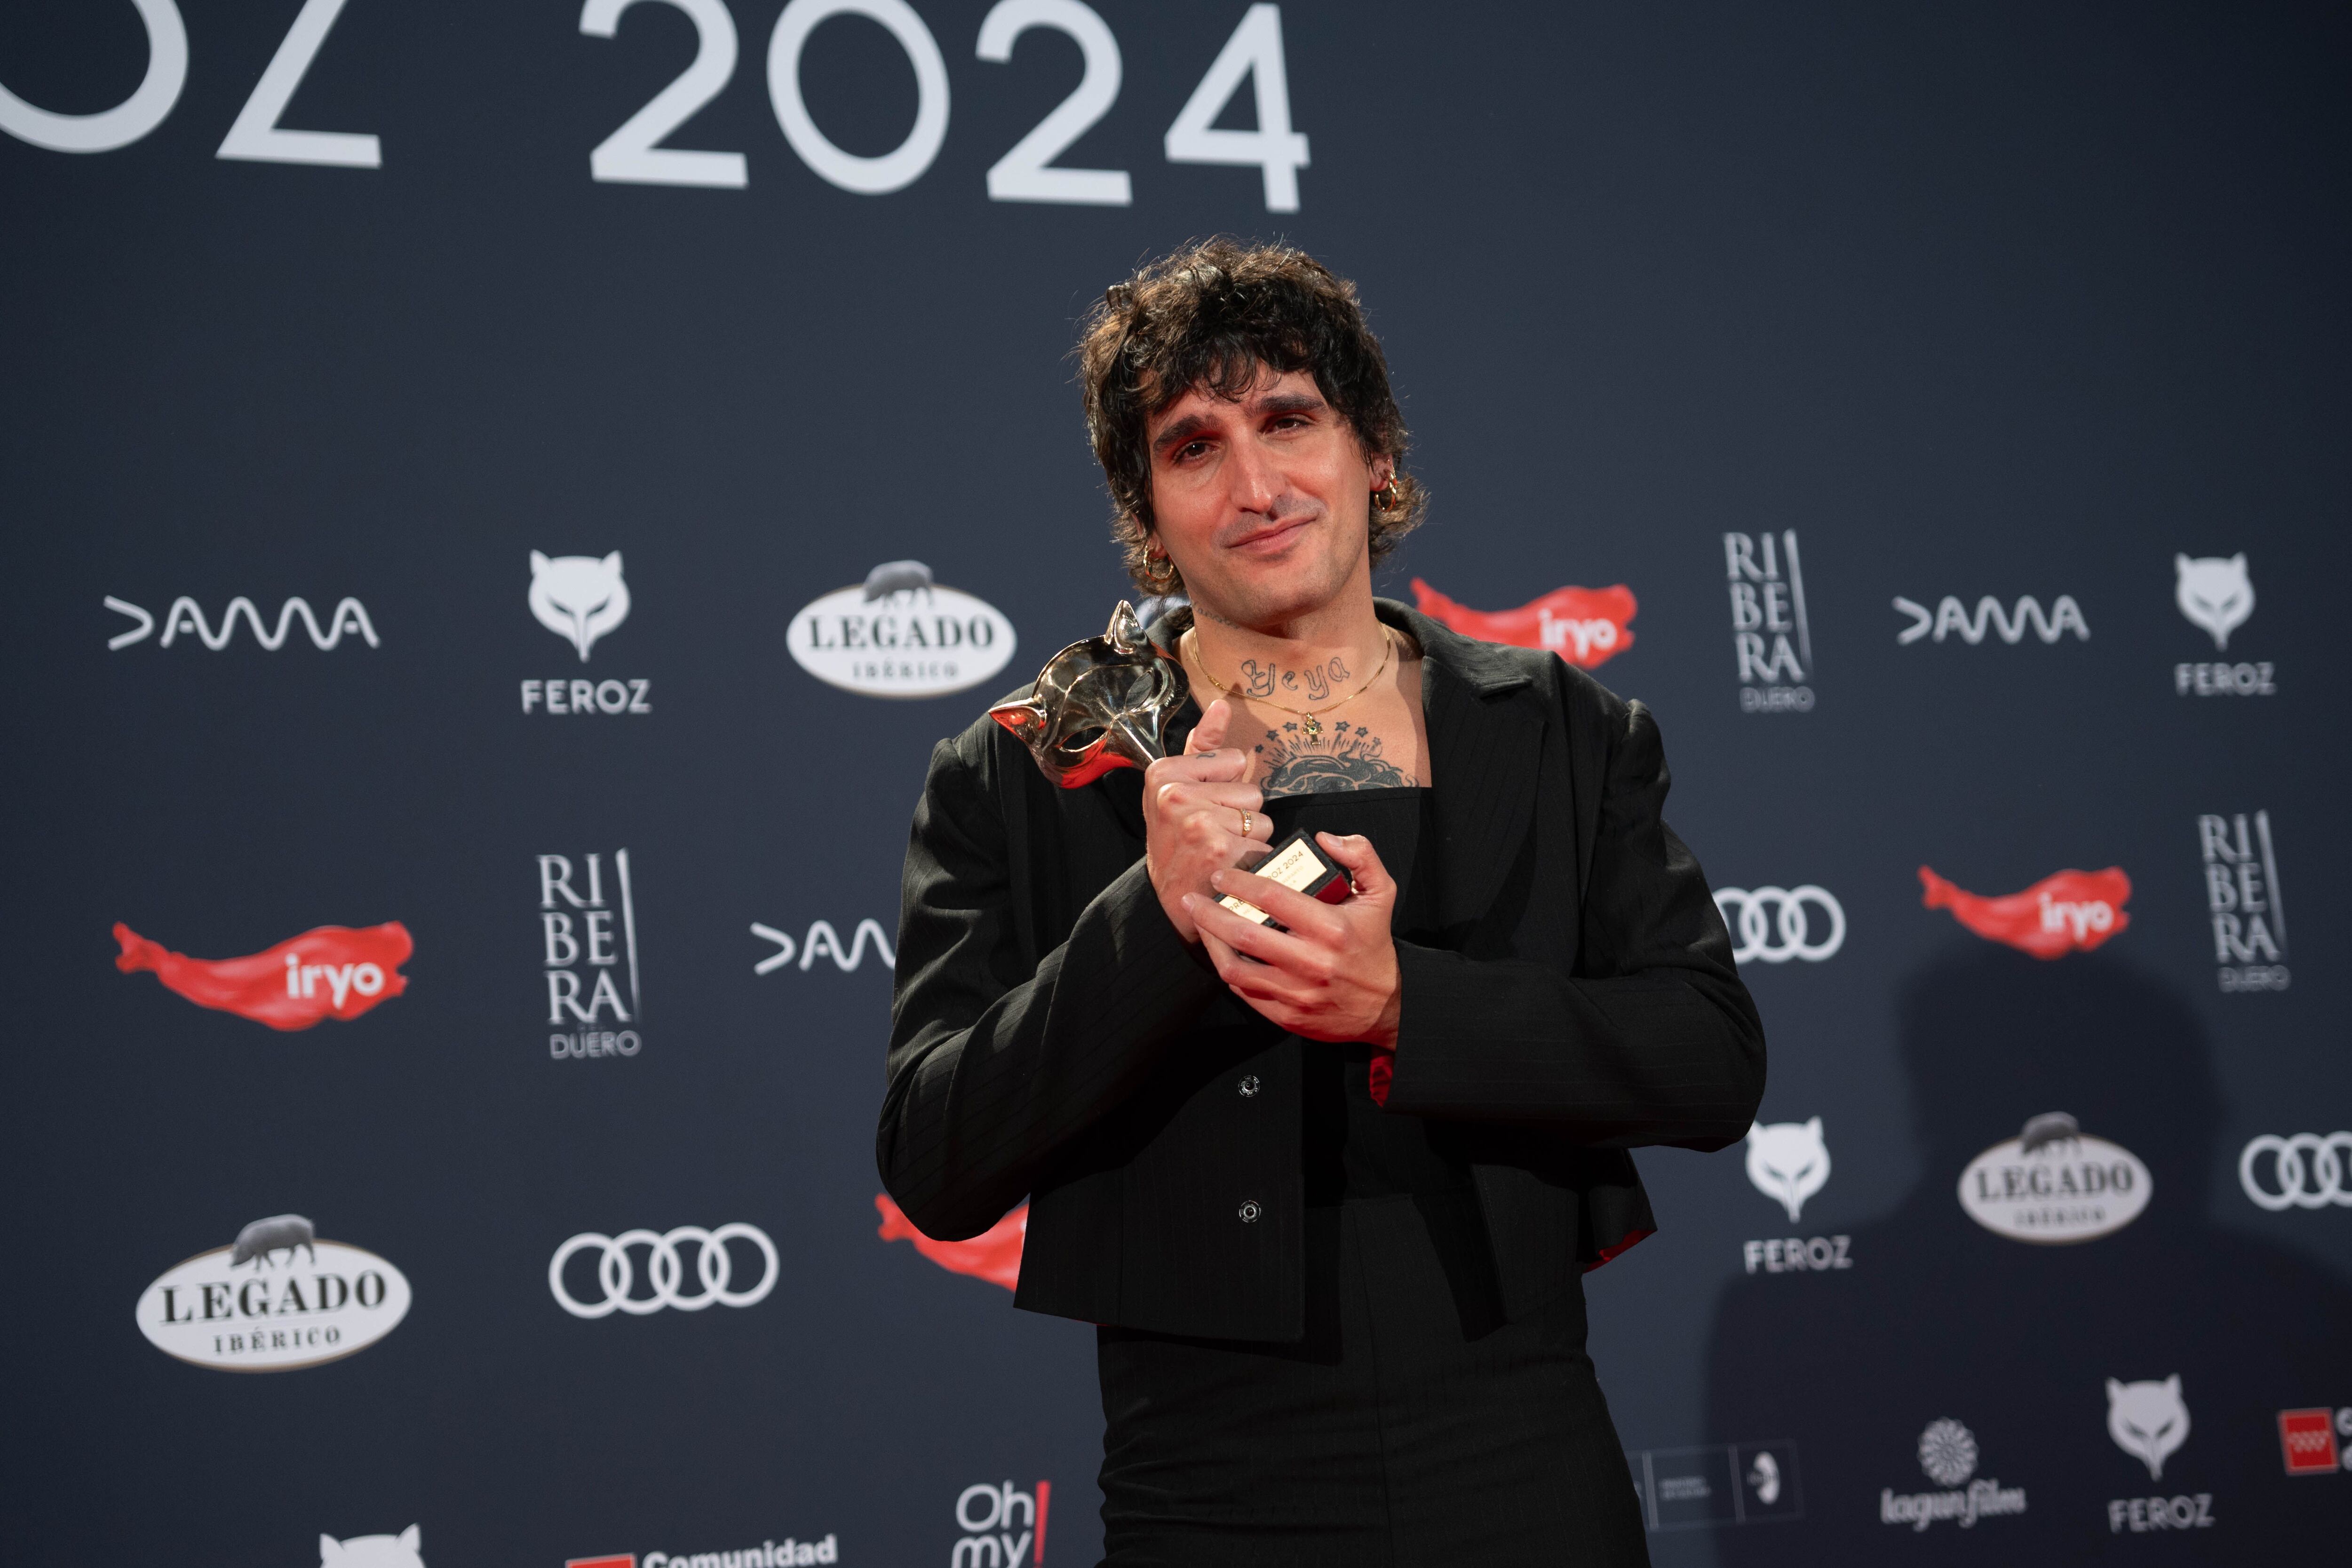 La Dani, un individuo no binario reconocido con una nominación al actor innovador en los Premios Goya, comenta: “Los premios neutrales de género son una fantasía peligrosa”.